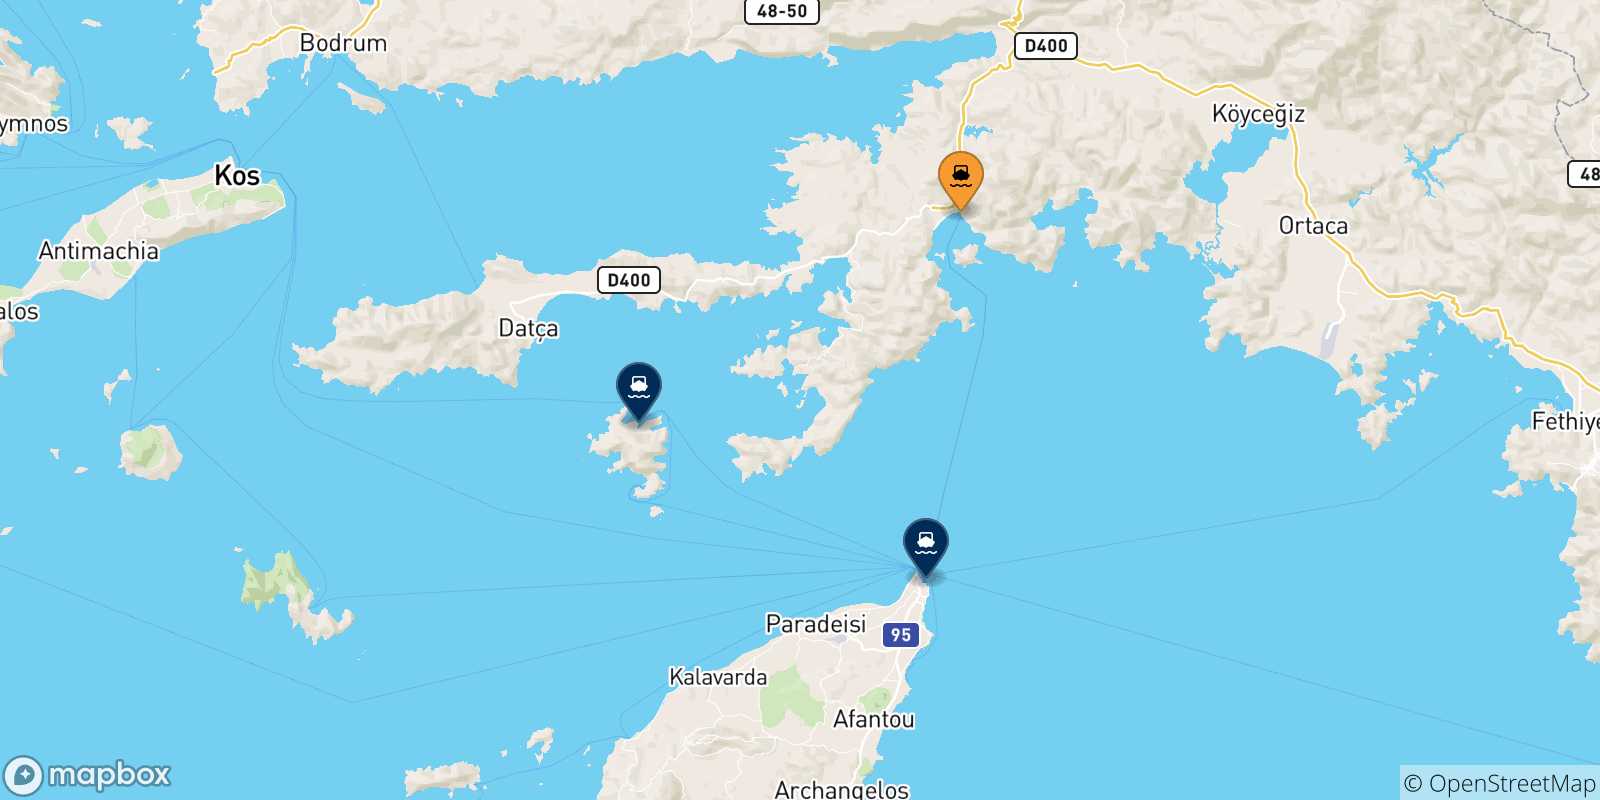 Mappa delle possibili rotte tra Marmaris e le Isole Dodecaneso